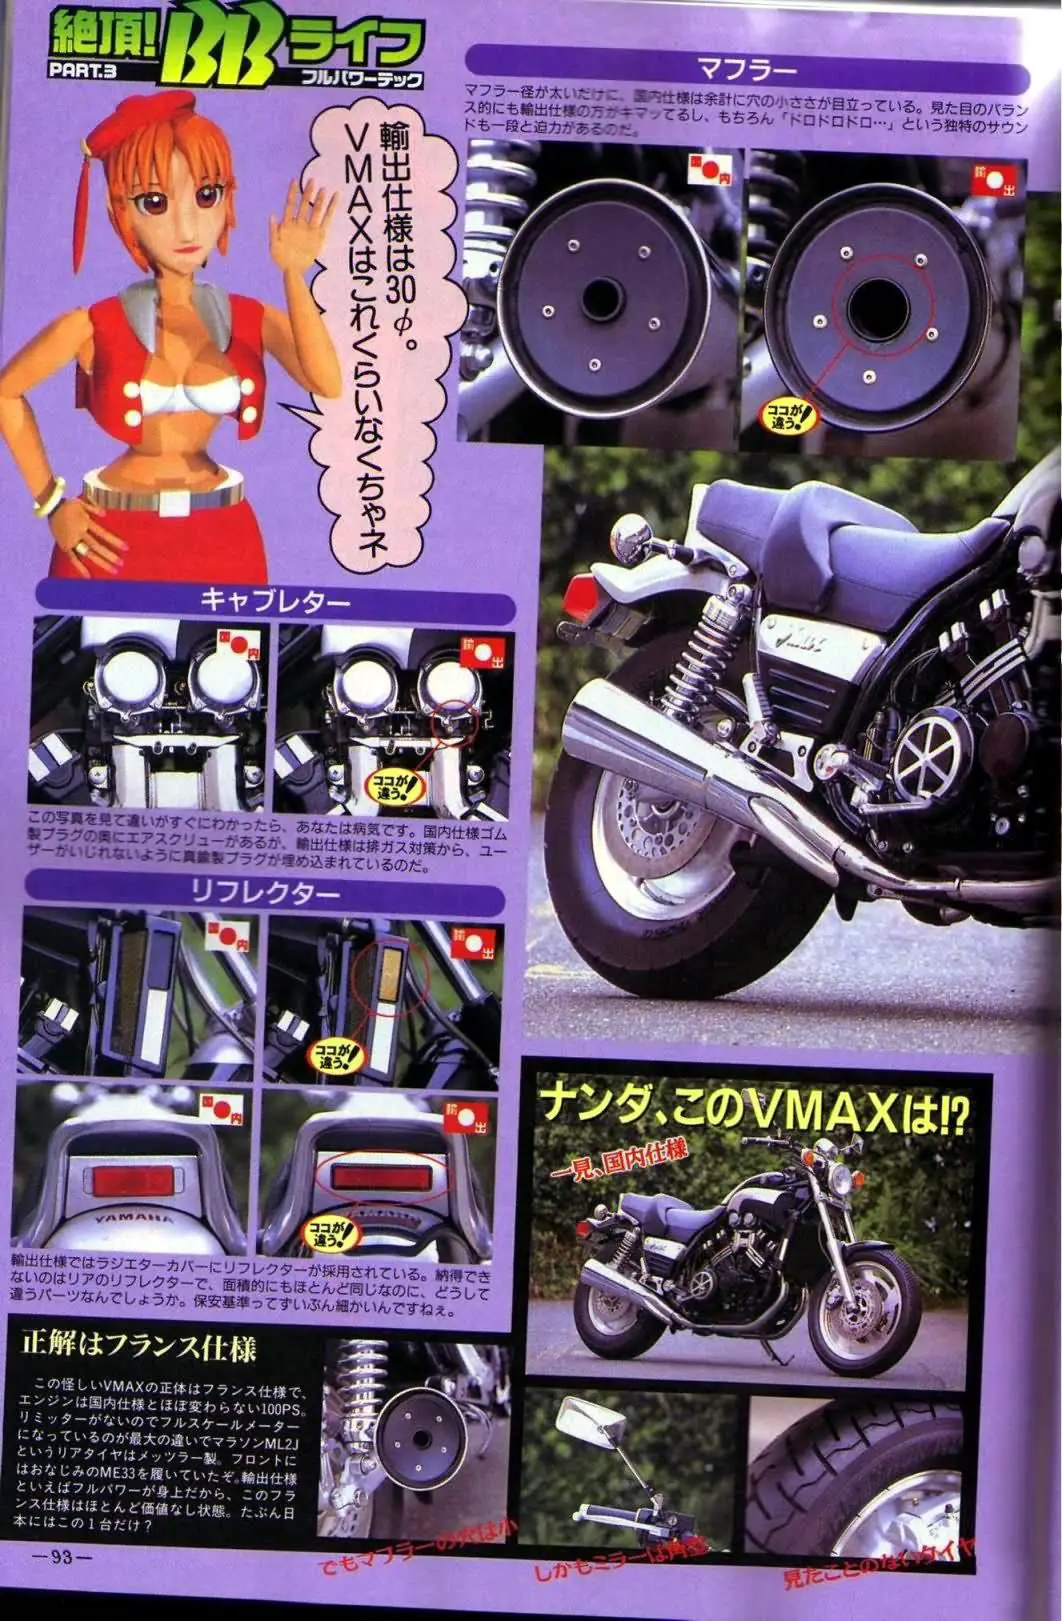 2000-Yamaha-V-Maxe.jpg